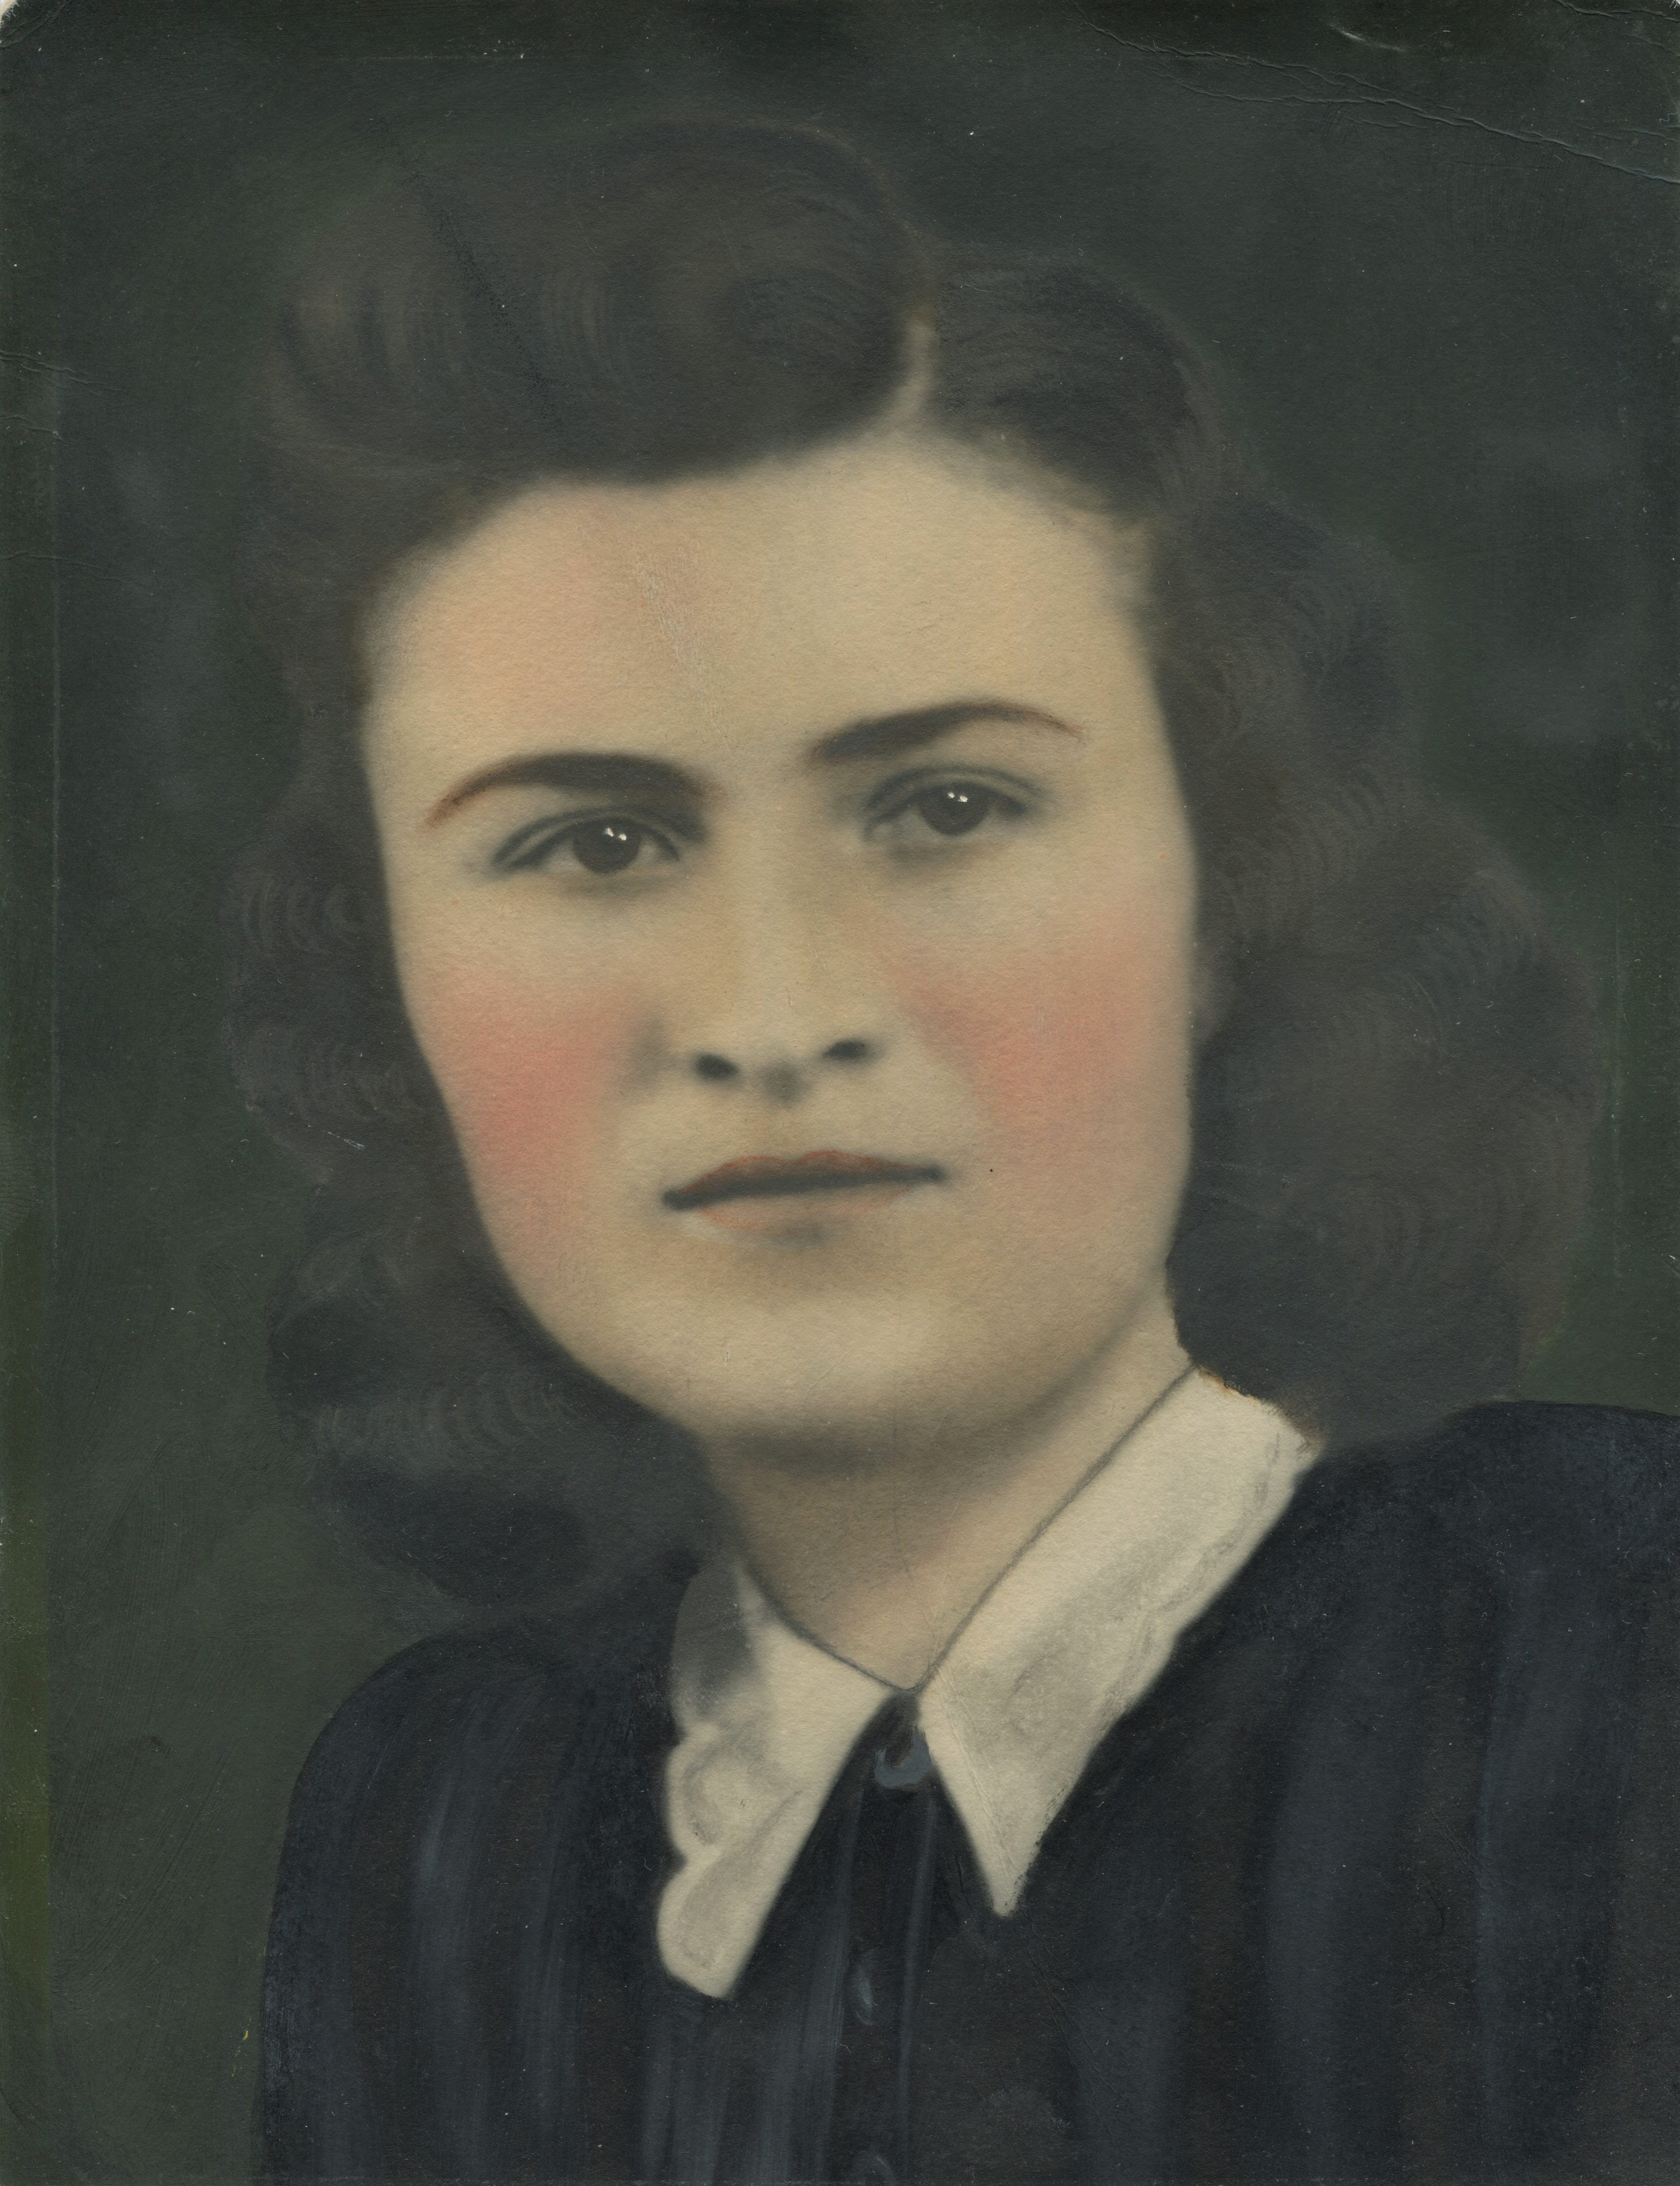 Viera Šagátová in her youth